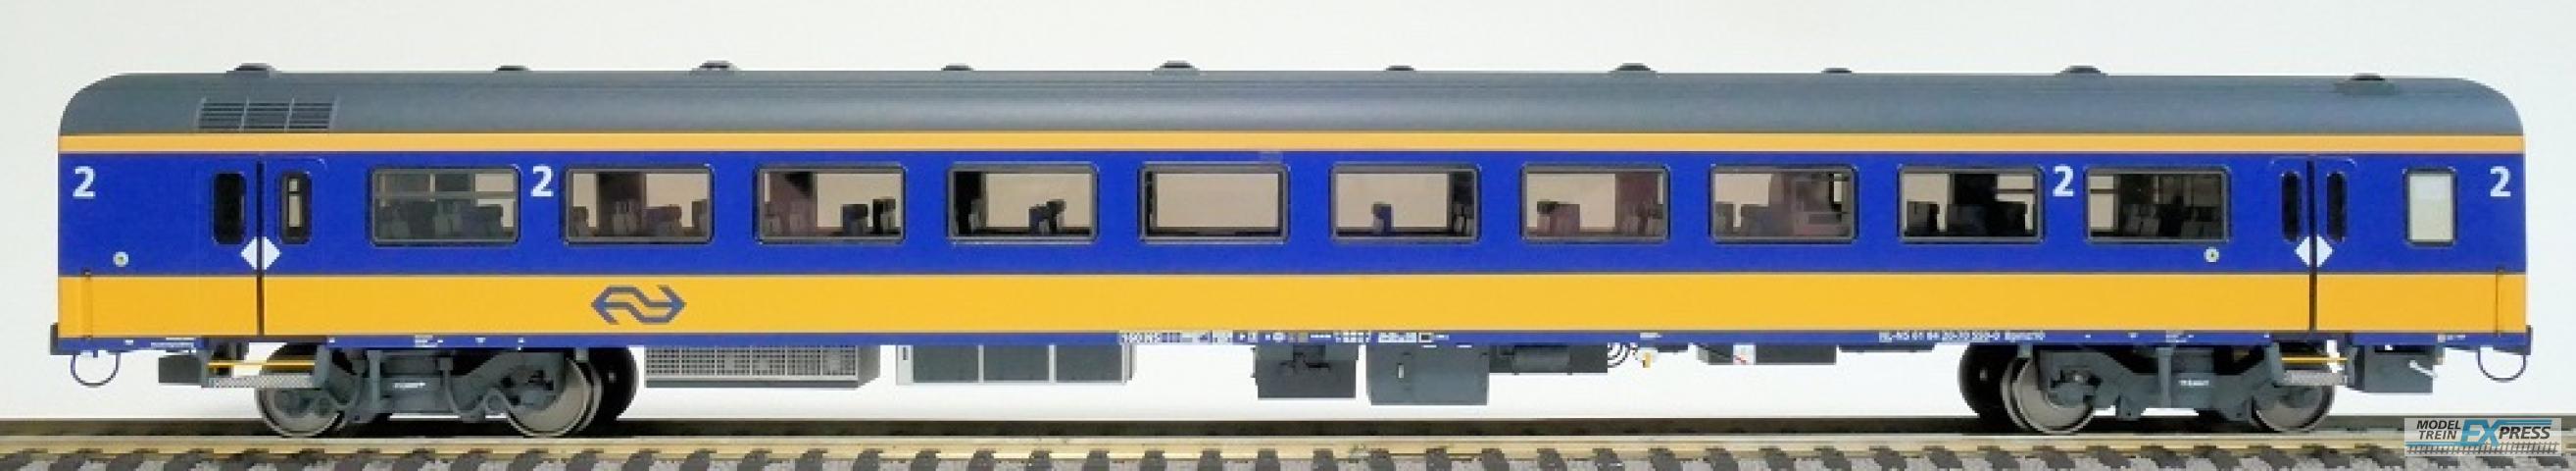 Exact-train 11017 NS ICRm Amsterdam - Breda für den Inlandseinsatz Reisezugwagen Bpmz10 ( Farbe Gelb / Blau), Ep. VI